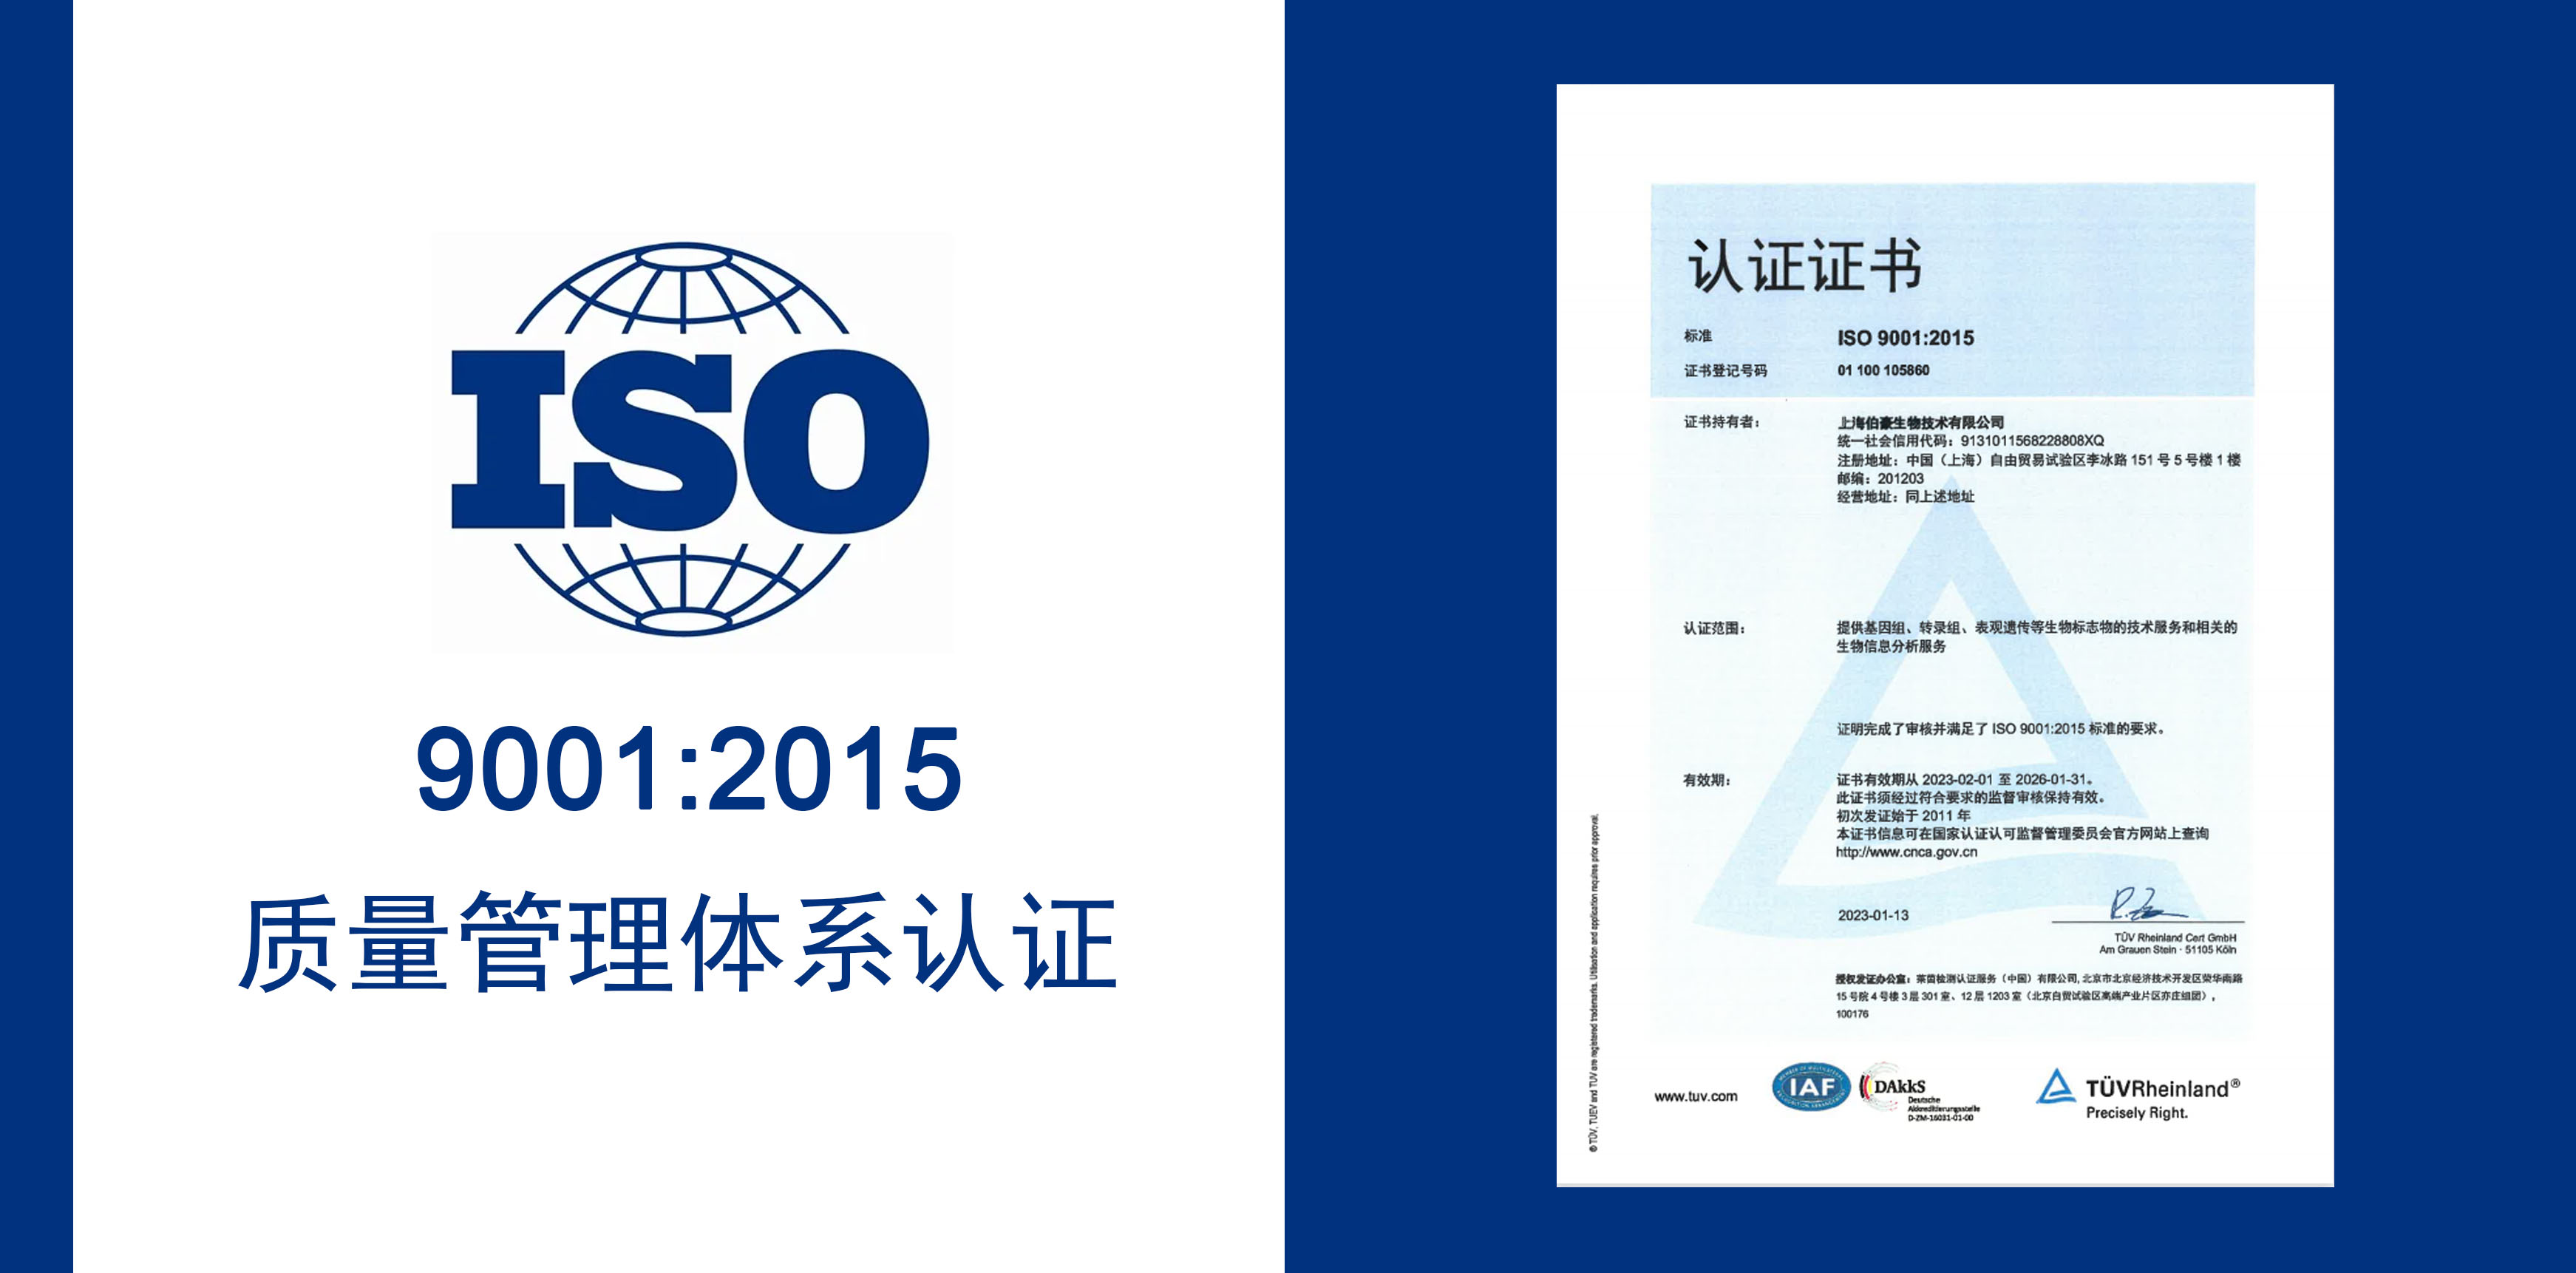 伯豪生物获得 IOS9001 质量服务体系认证